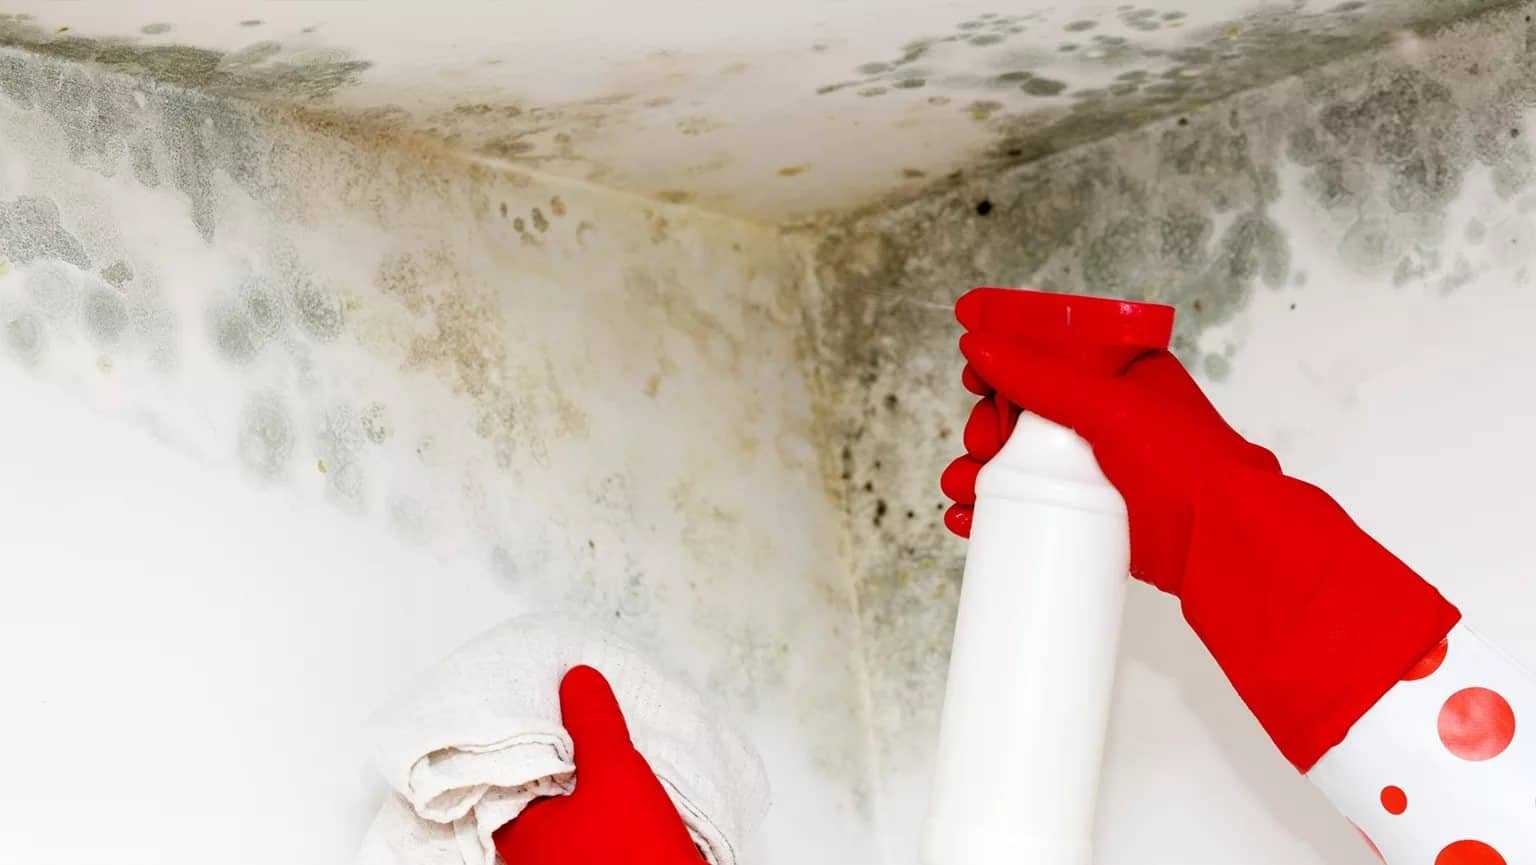 Плесень в ванной на потолке: как убрать, вывести, чем обработать, как бороться самостоятельно